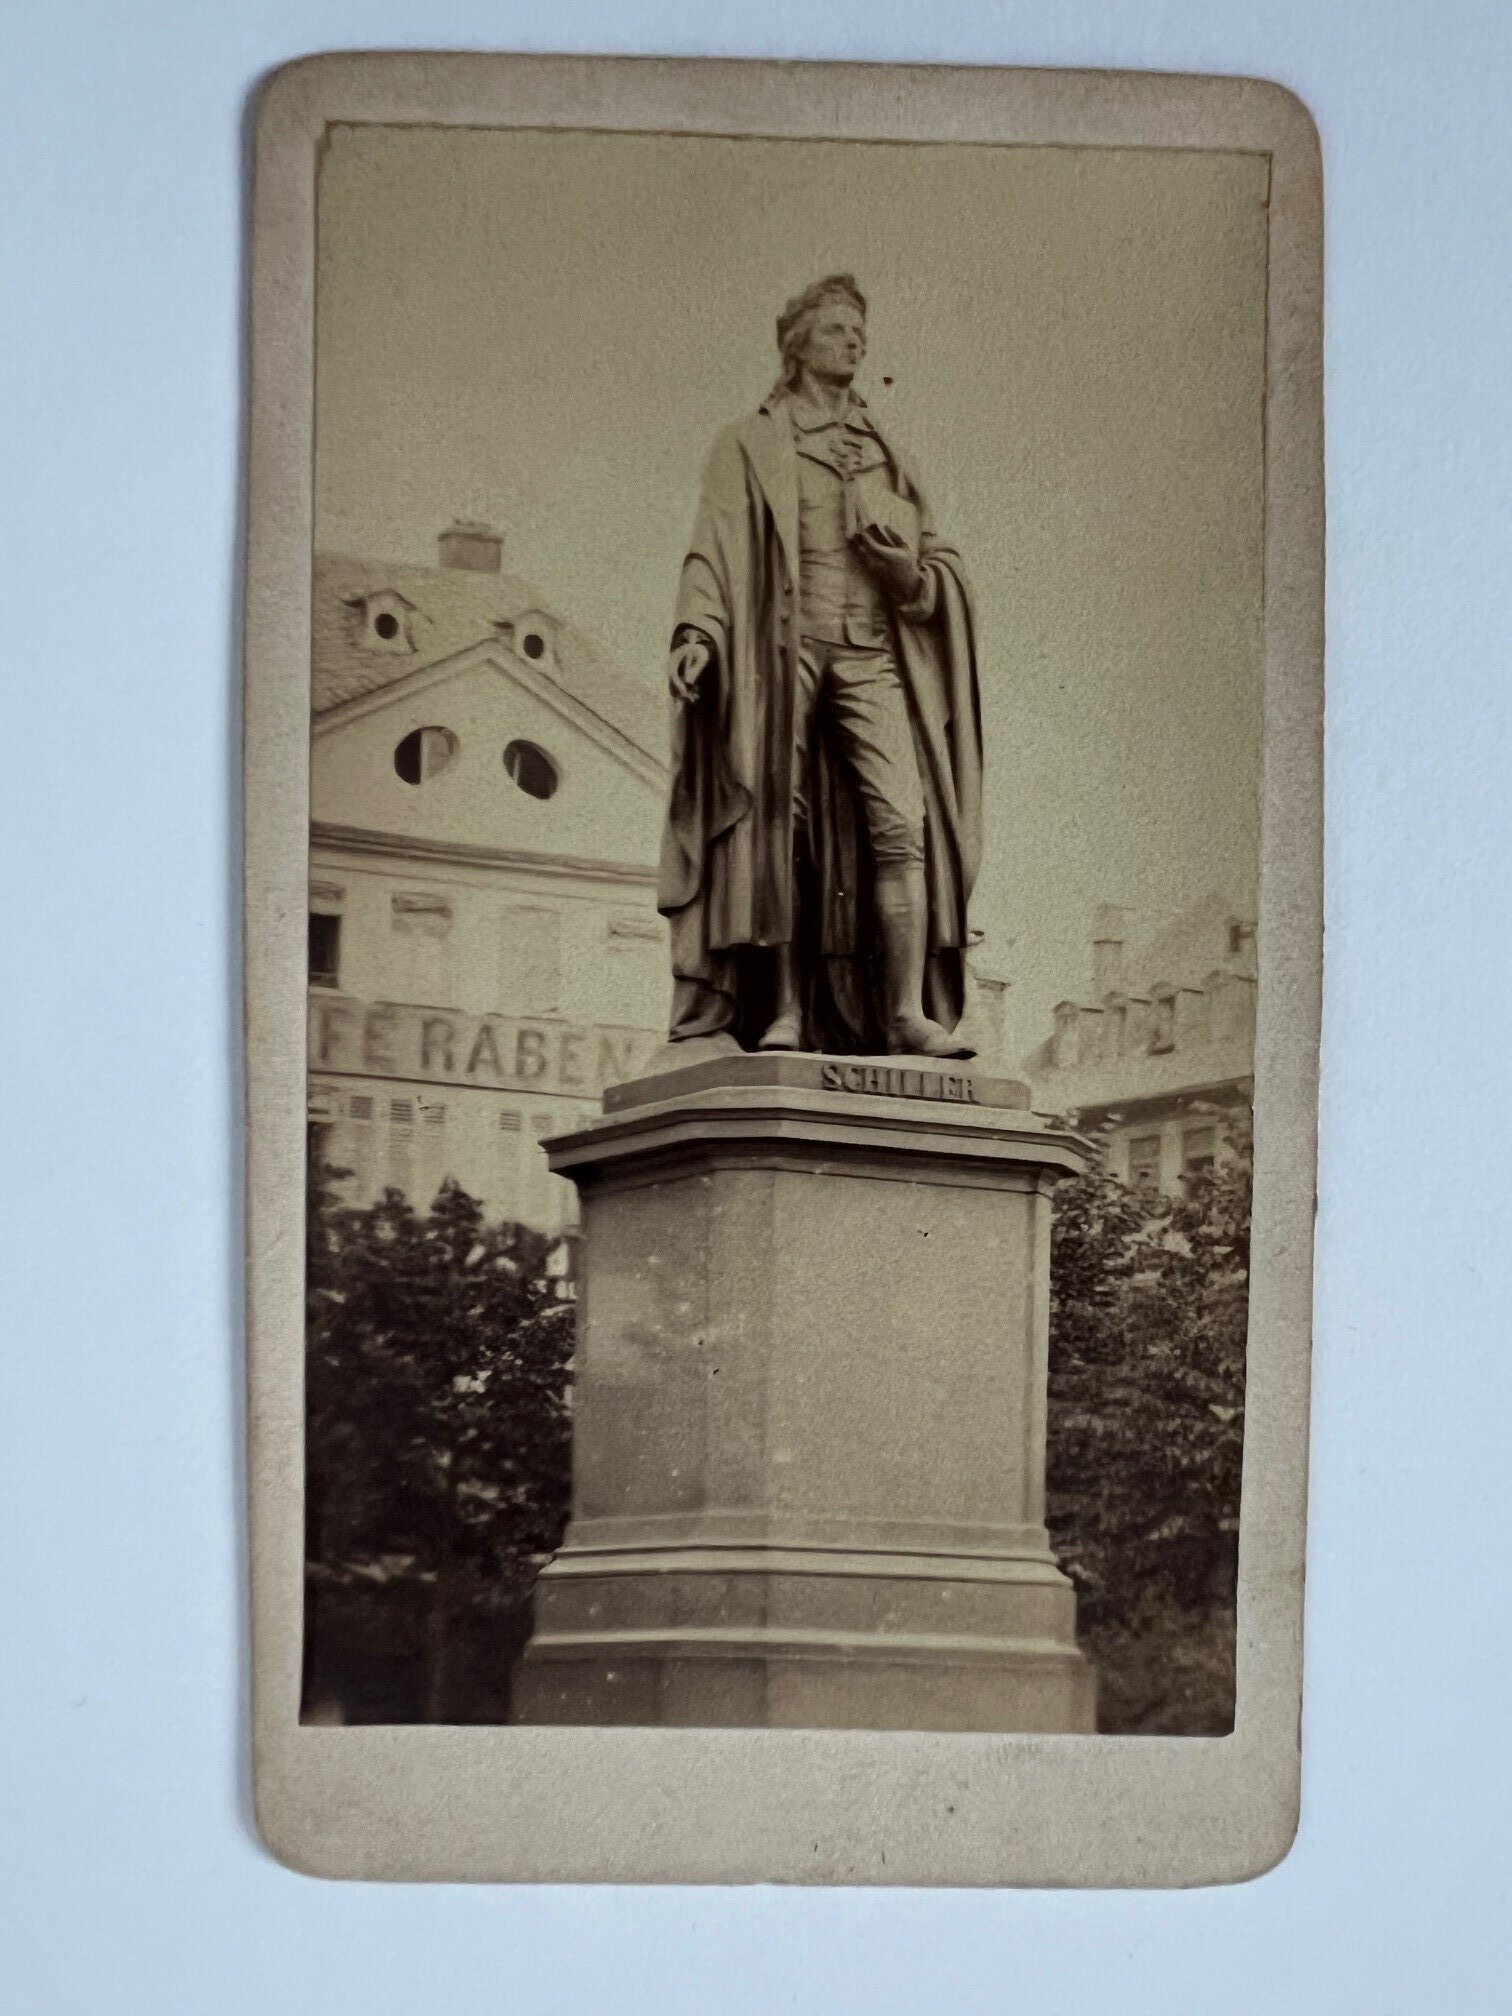 CdV, Straub und Kühn, Frankfurt, Das Schiller-Denkmal, ca. 1868. (Taunus-Rhein-Main - Regionalgeschichtliche Sammlung Dr. Stefan Naas CC BY-NC-SA)